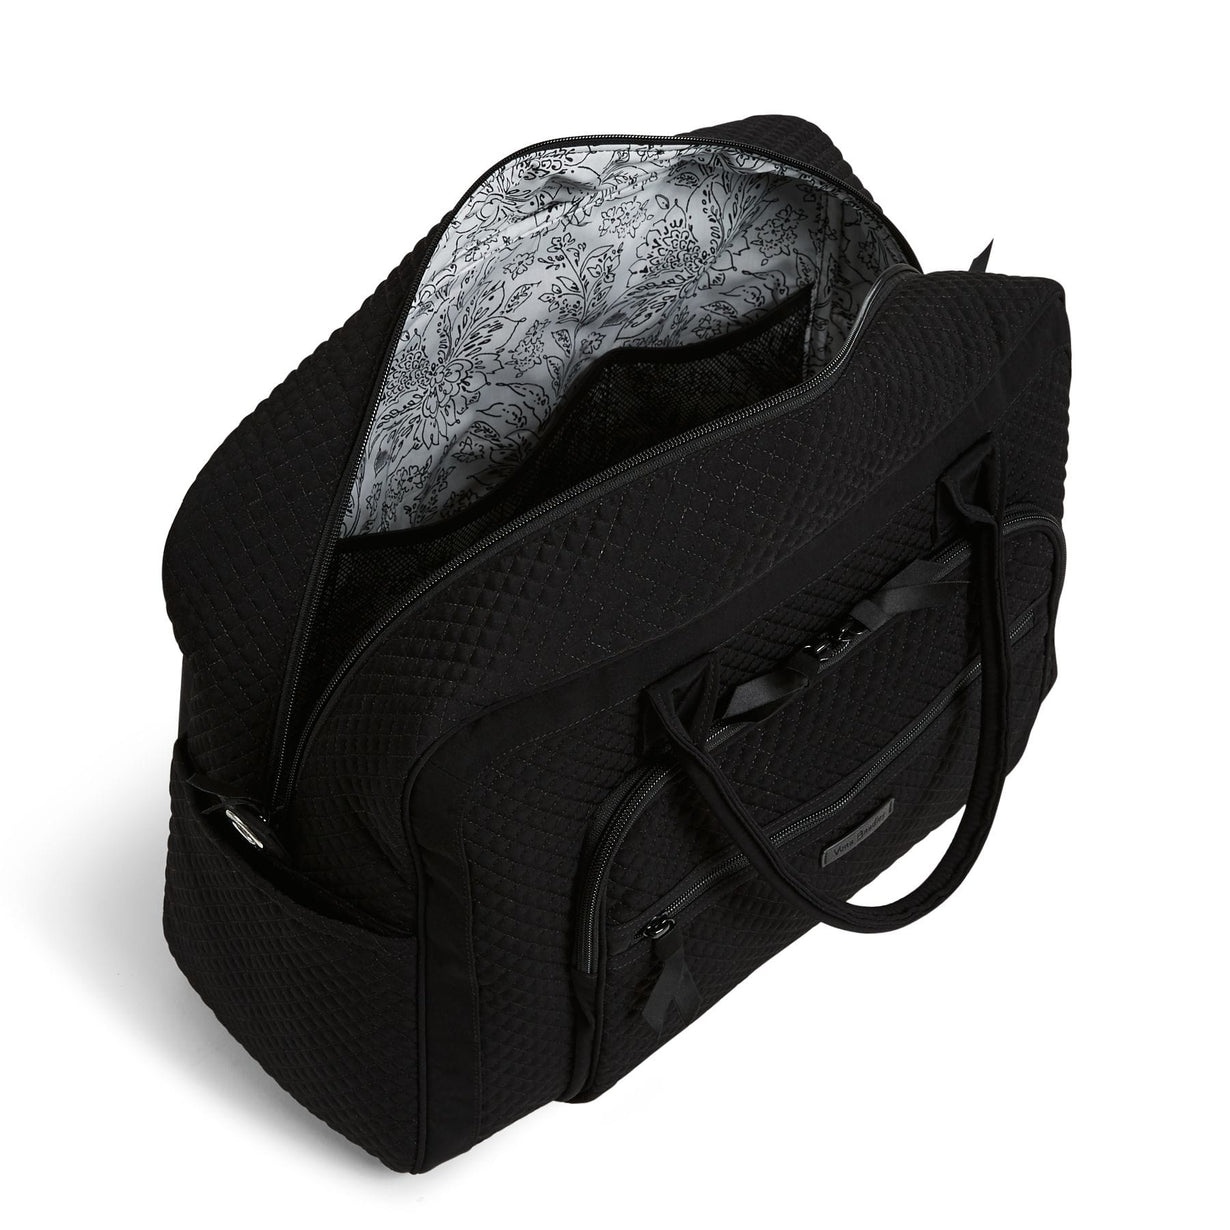 Weekender Travel Bag - Microfiber Classic Black